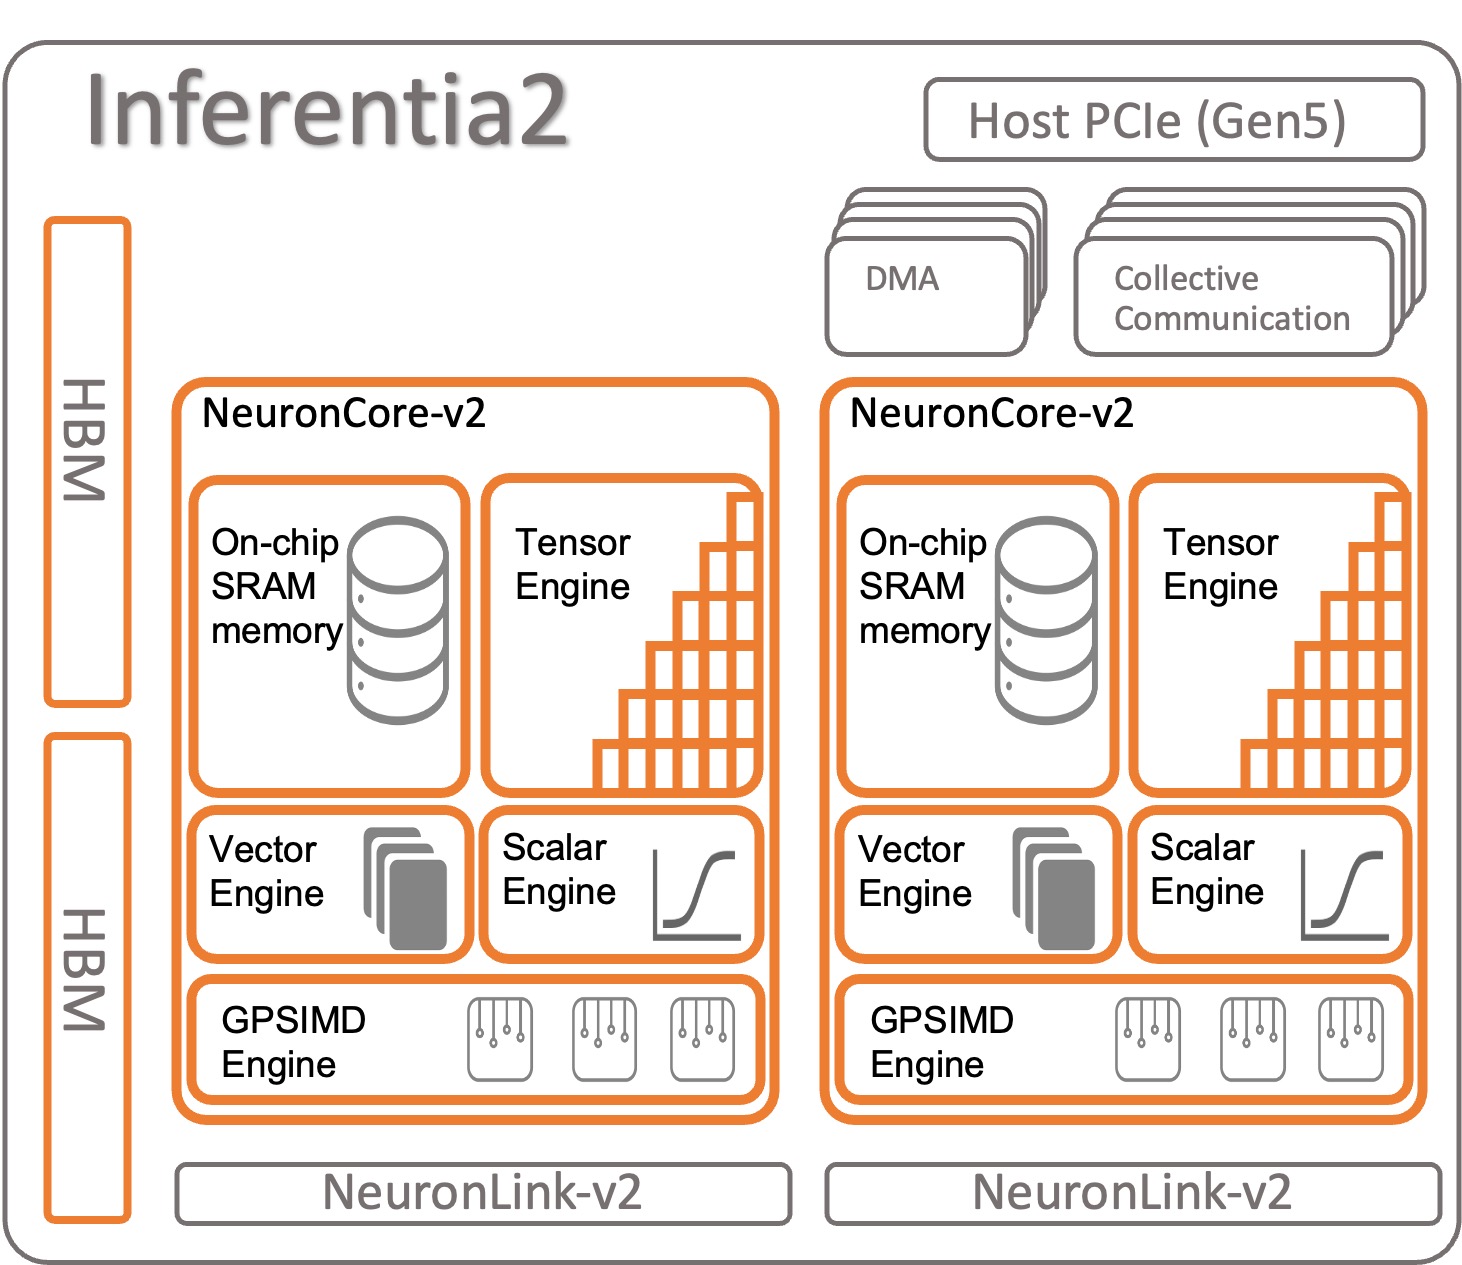 AWS Inferentia2 基于 AWS Inferentia1 构建，吞吐量提高了 4 倍，延迟降低了 10 倍 |亚马逊网络服务柏拉图区块链数据智能。垂直搜索。人工智能。